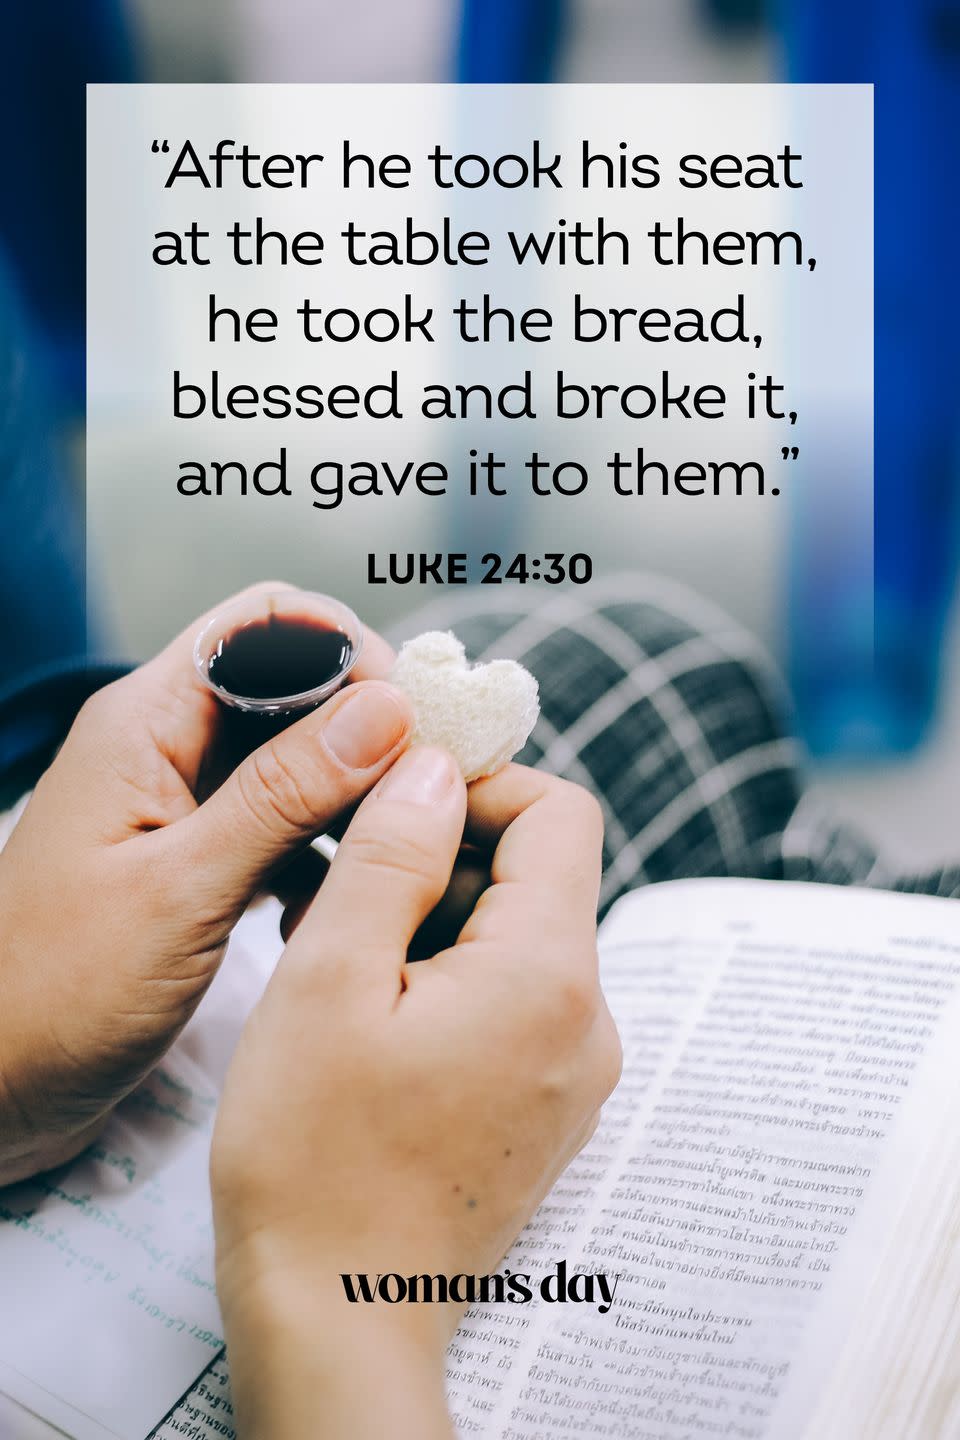 3) Luke 24:30